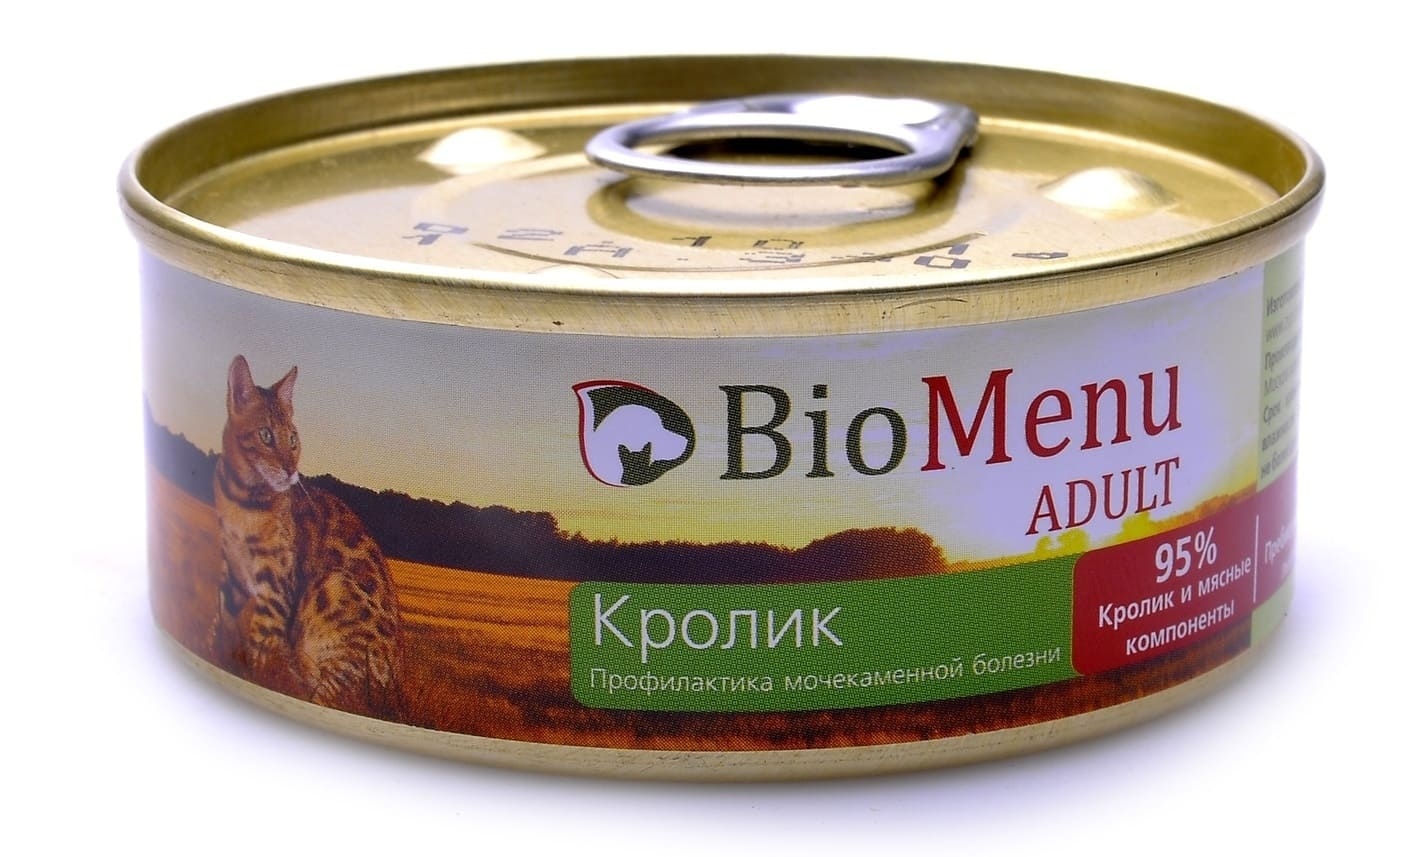 BioMenu BioMenu паштет для кошек с кроликом (100 г) консервы biomenu adult для кошек мясной паштет с индейкой 95% мясо 100 г